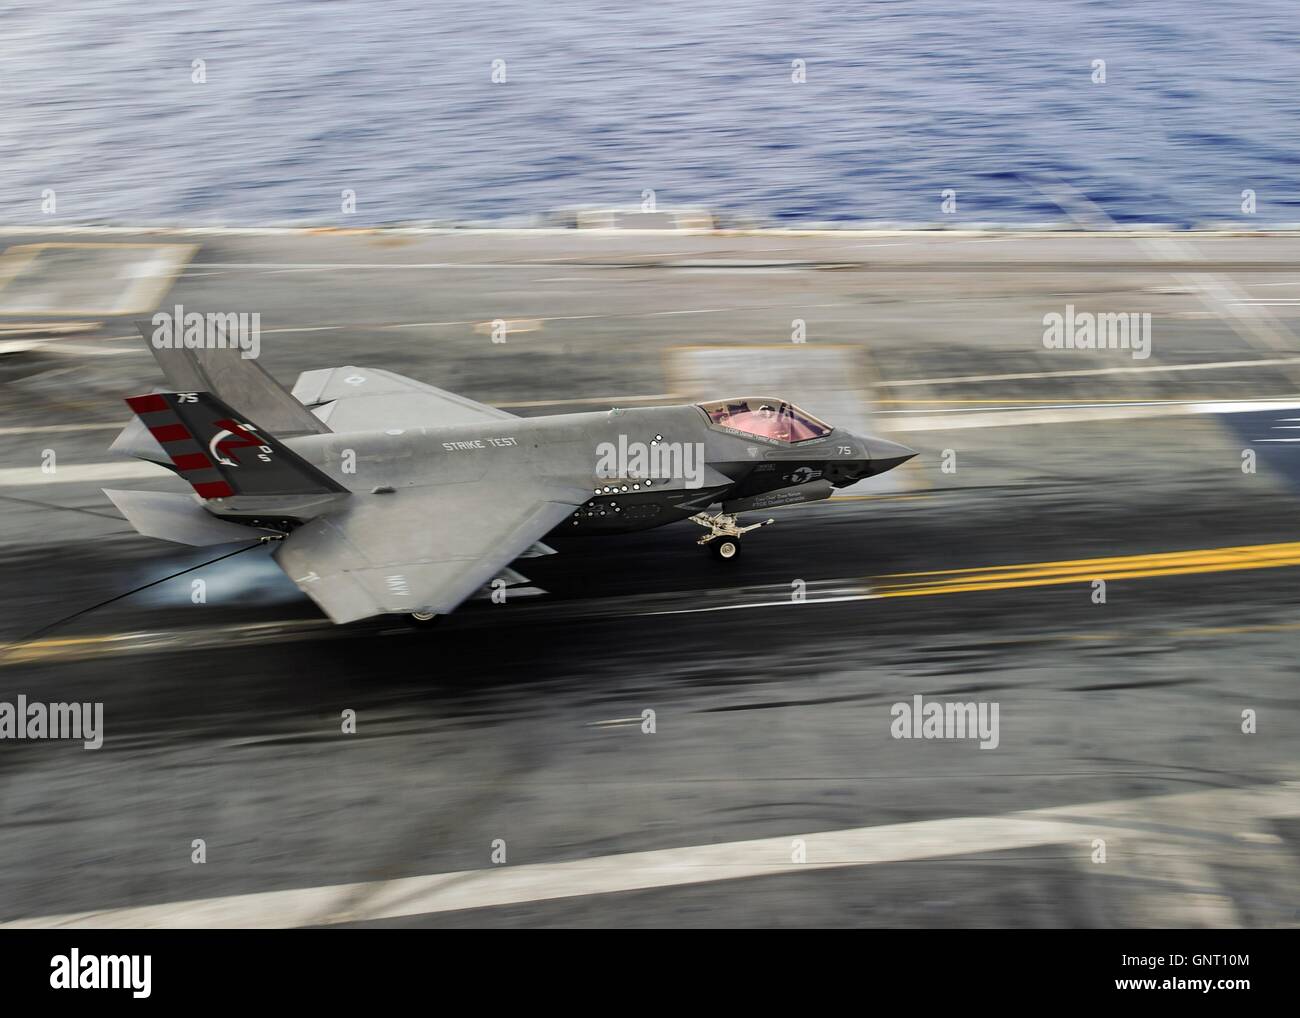 Un U.S Navy F-35C Lightning II carrier variante stealth fighter aeromobile atterra sul ponte di volo della portaerei USS George Washington 15 agosto 2016 nell'Oceano Atlantico. La F-35C aeromobile sta conducendo la terza e ultima prova di sviluppo ed è prevista la flotta operativa nel 2018. Foto Stock